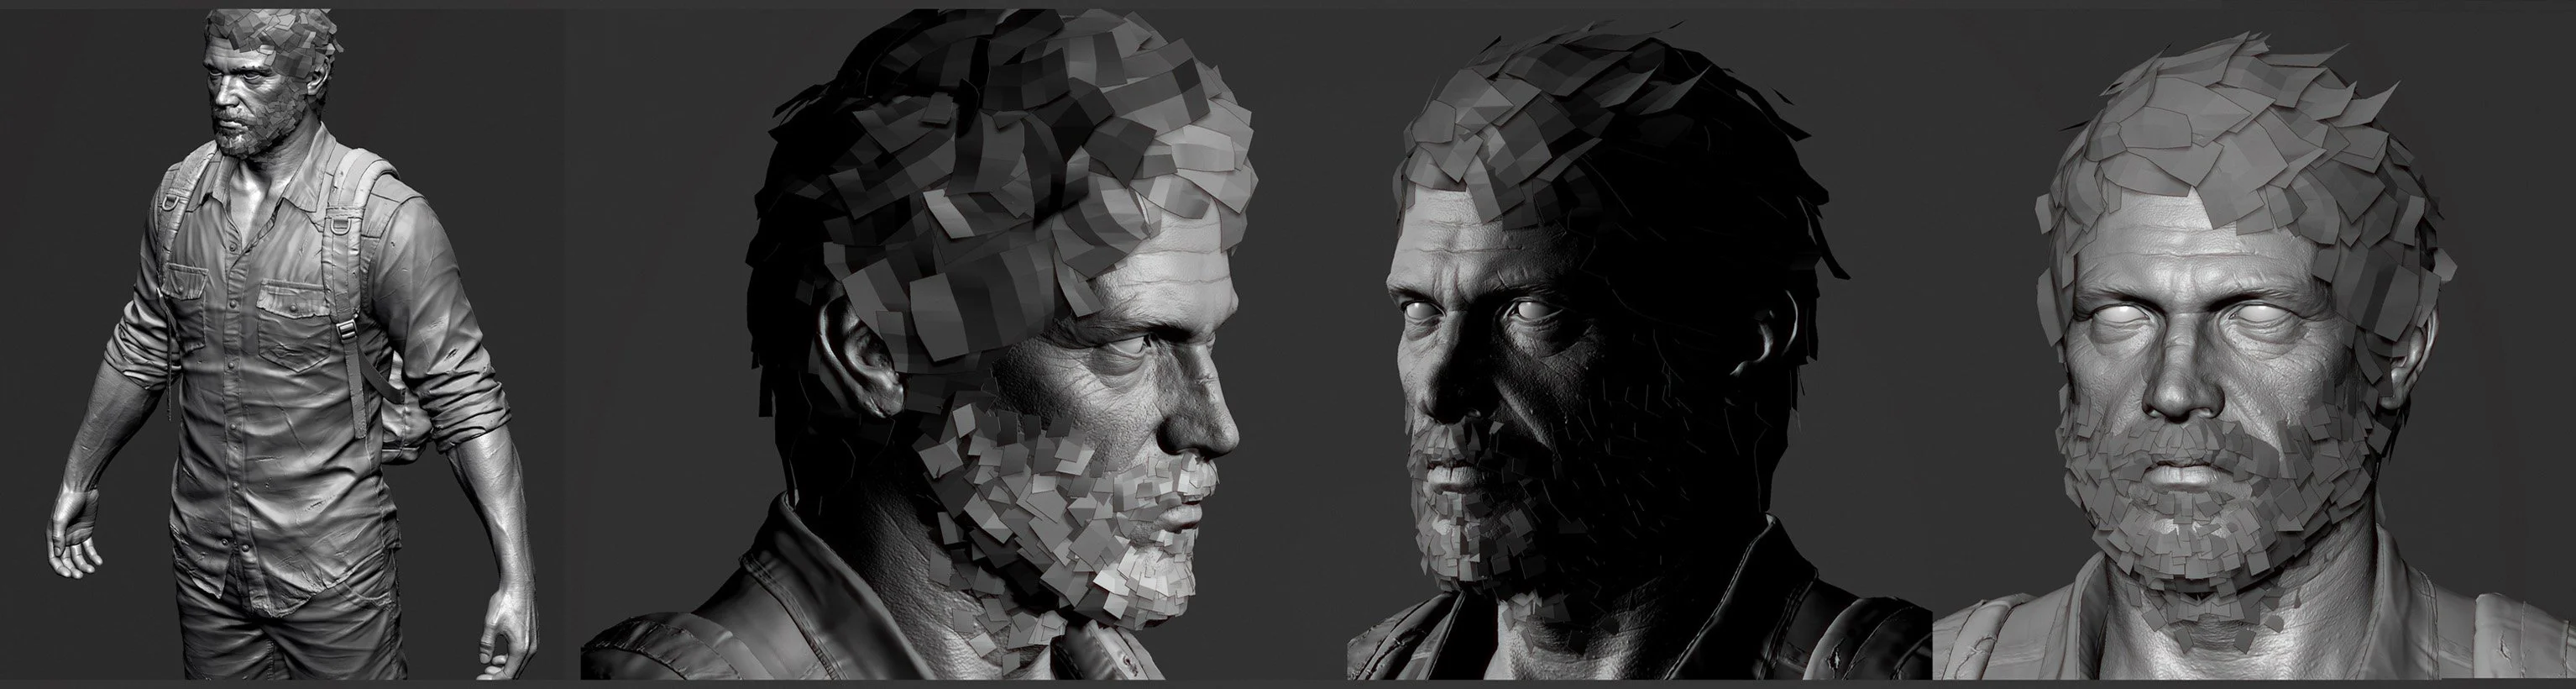 Разработчик The Last of Us выложил свои наработки в сеть - фото 3